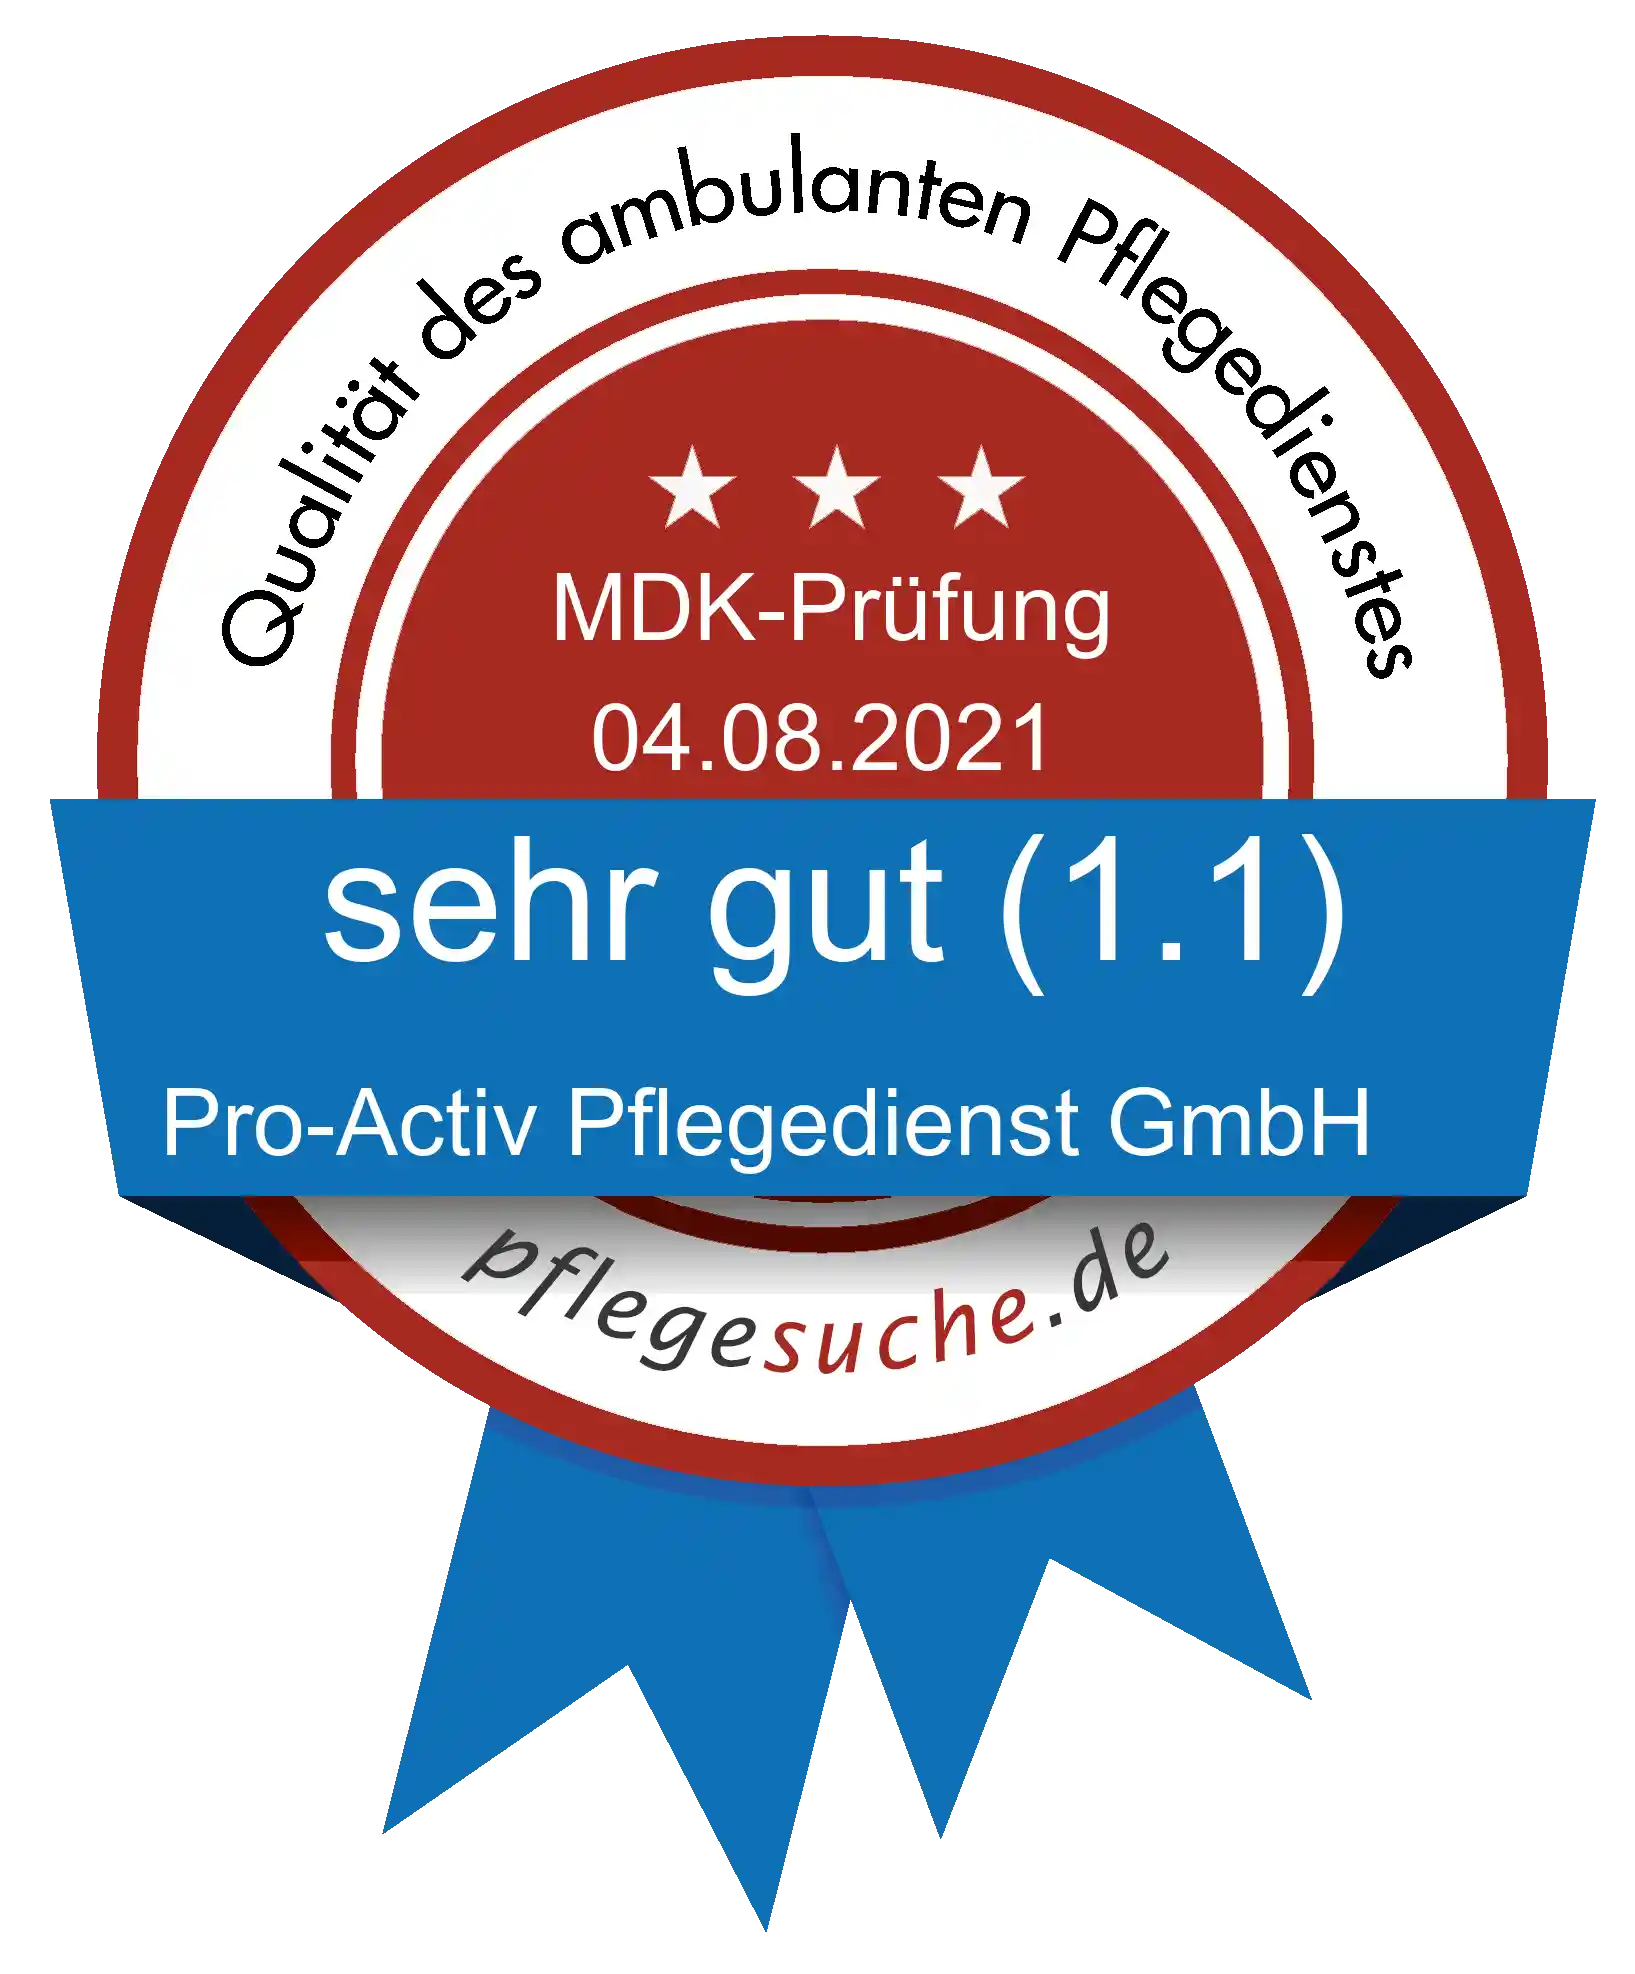 Siegel Benotung: Pro-Activ Pflegedienst GmbH